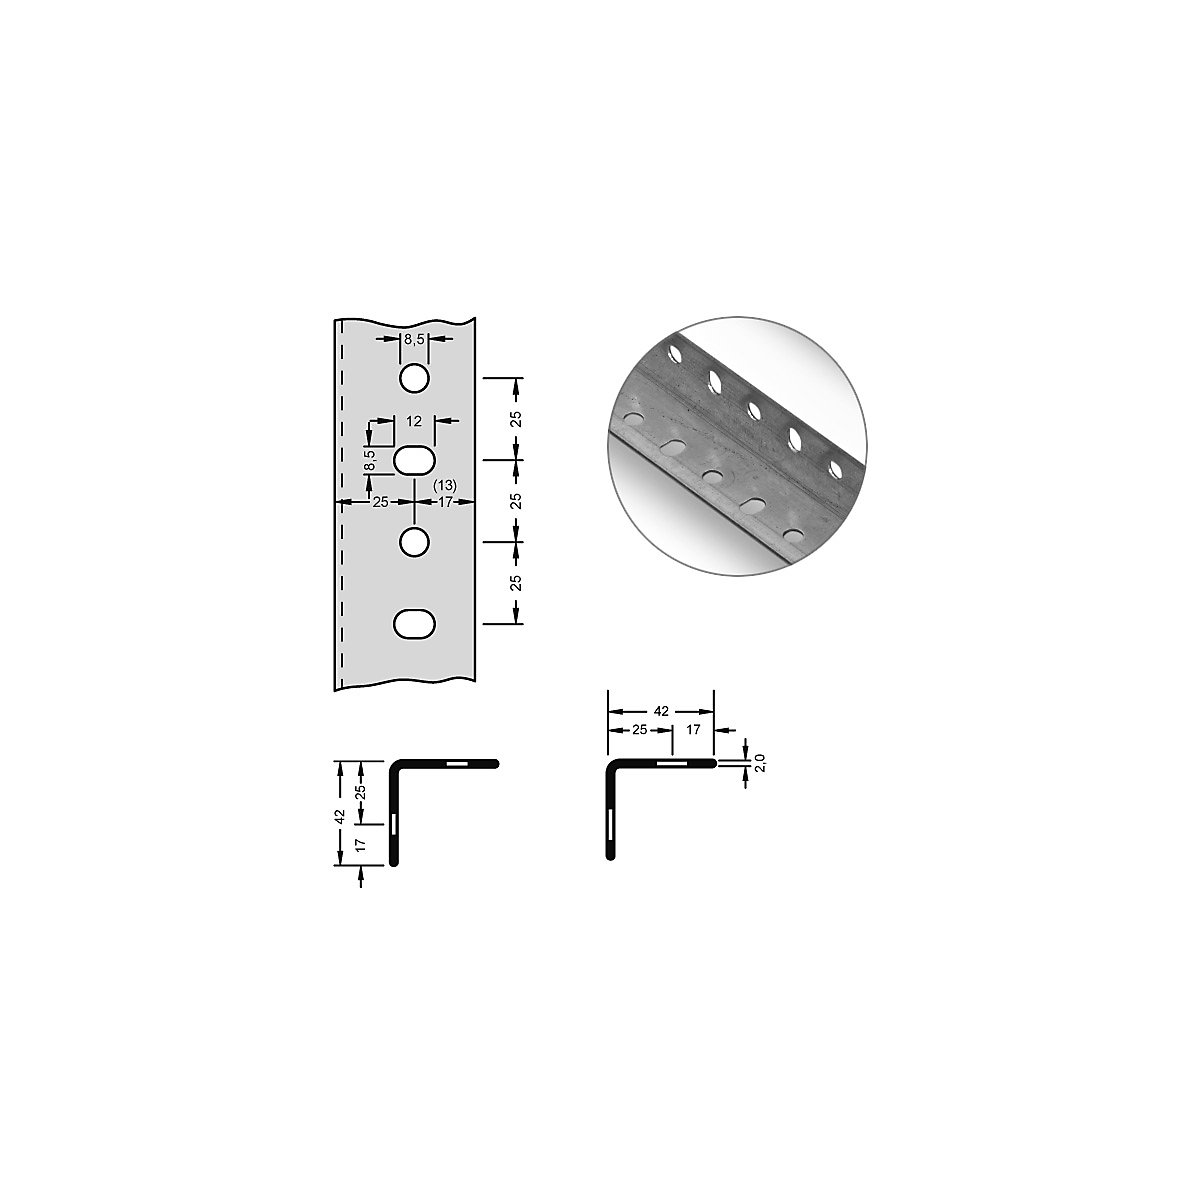 Stalowy profil narożny do systemu modułowego – hofe, 42 x 42 x 2 mm, dł. 2,5 m, ocynkowanie, opak. 8 szt.